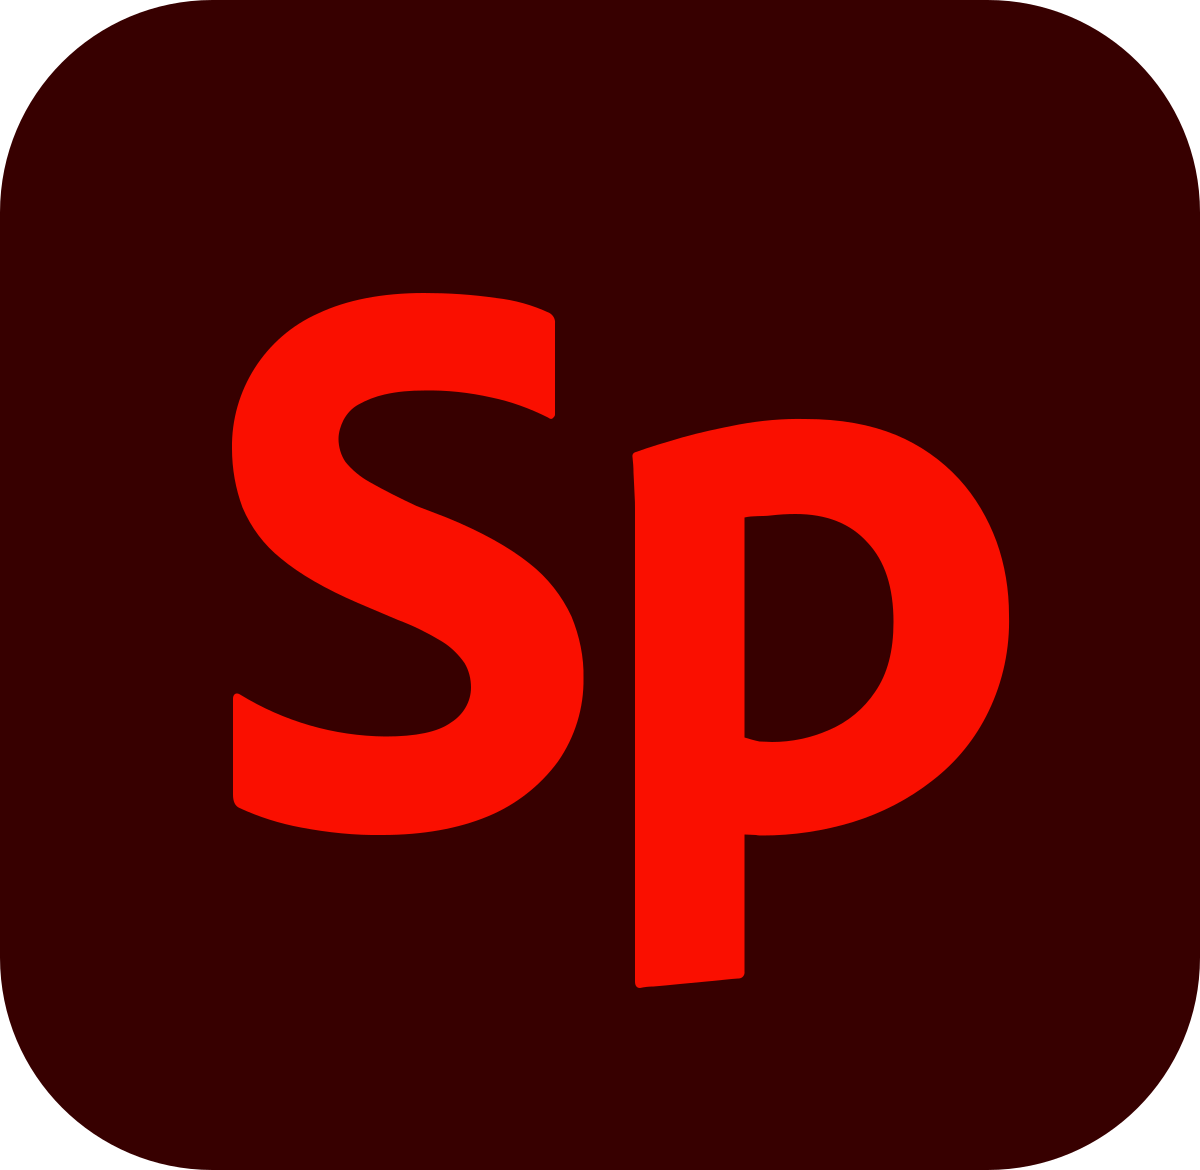 Adobe_Spark_2020.png